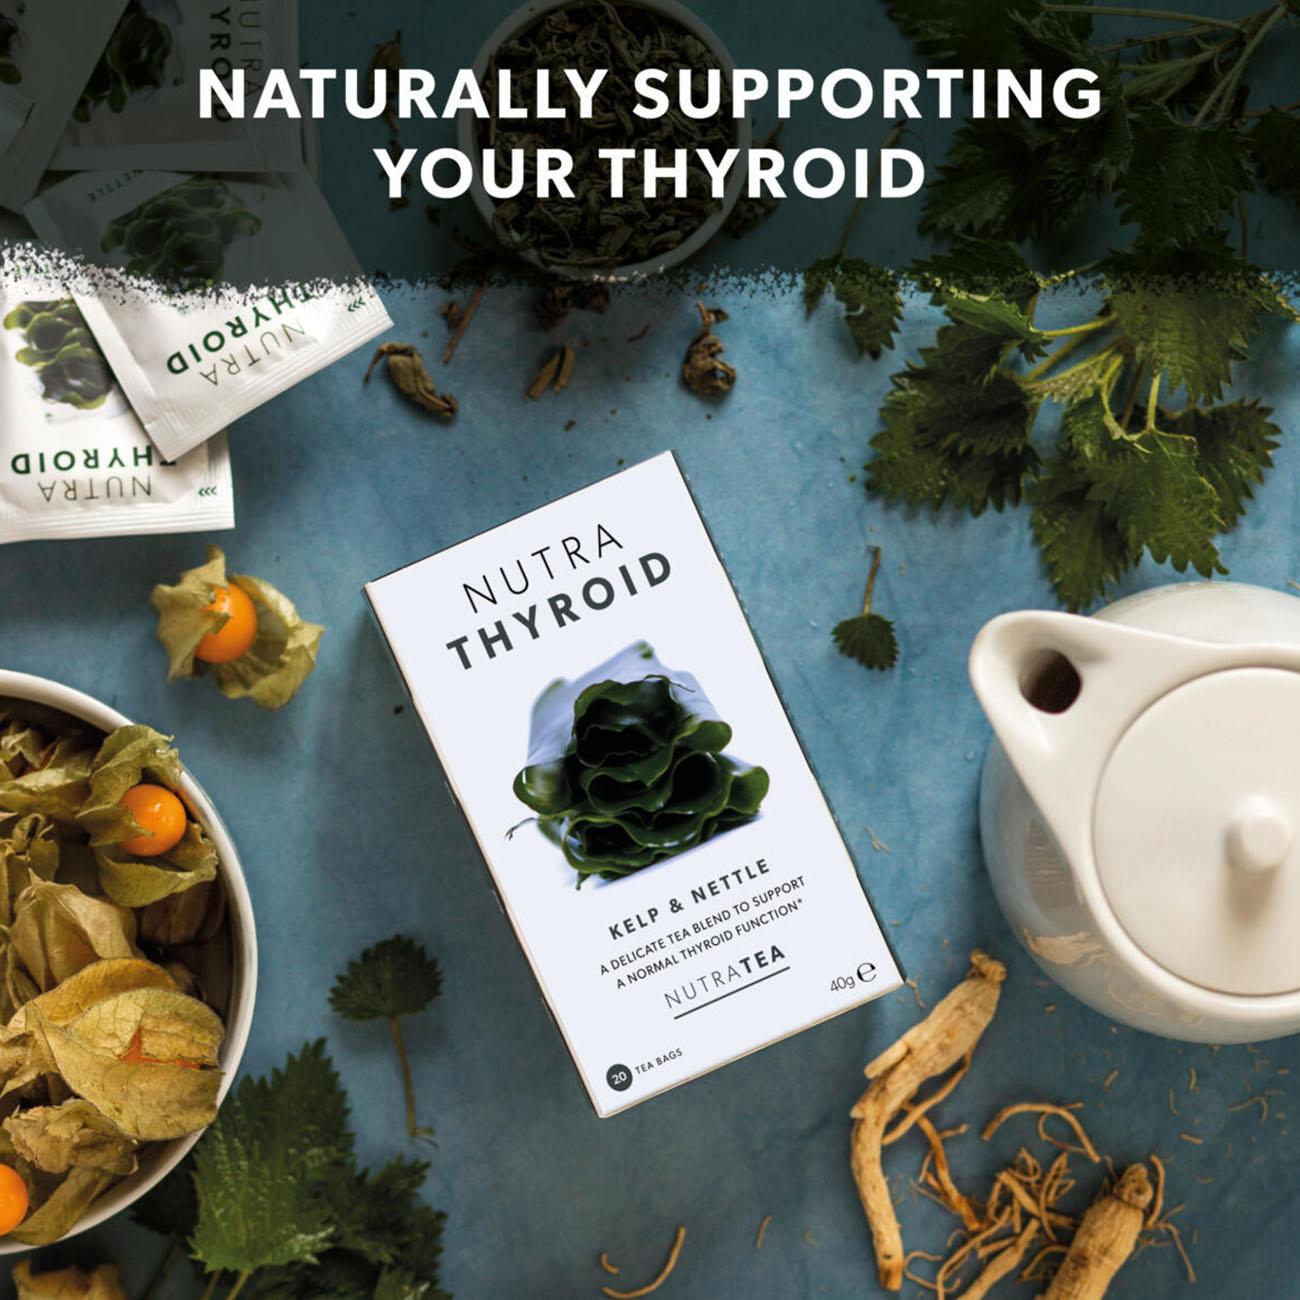 Nutra Thyroid Herbal Tea 20bags